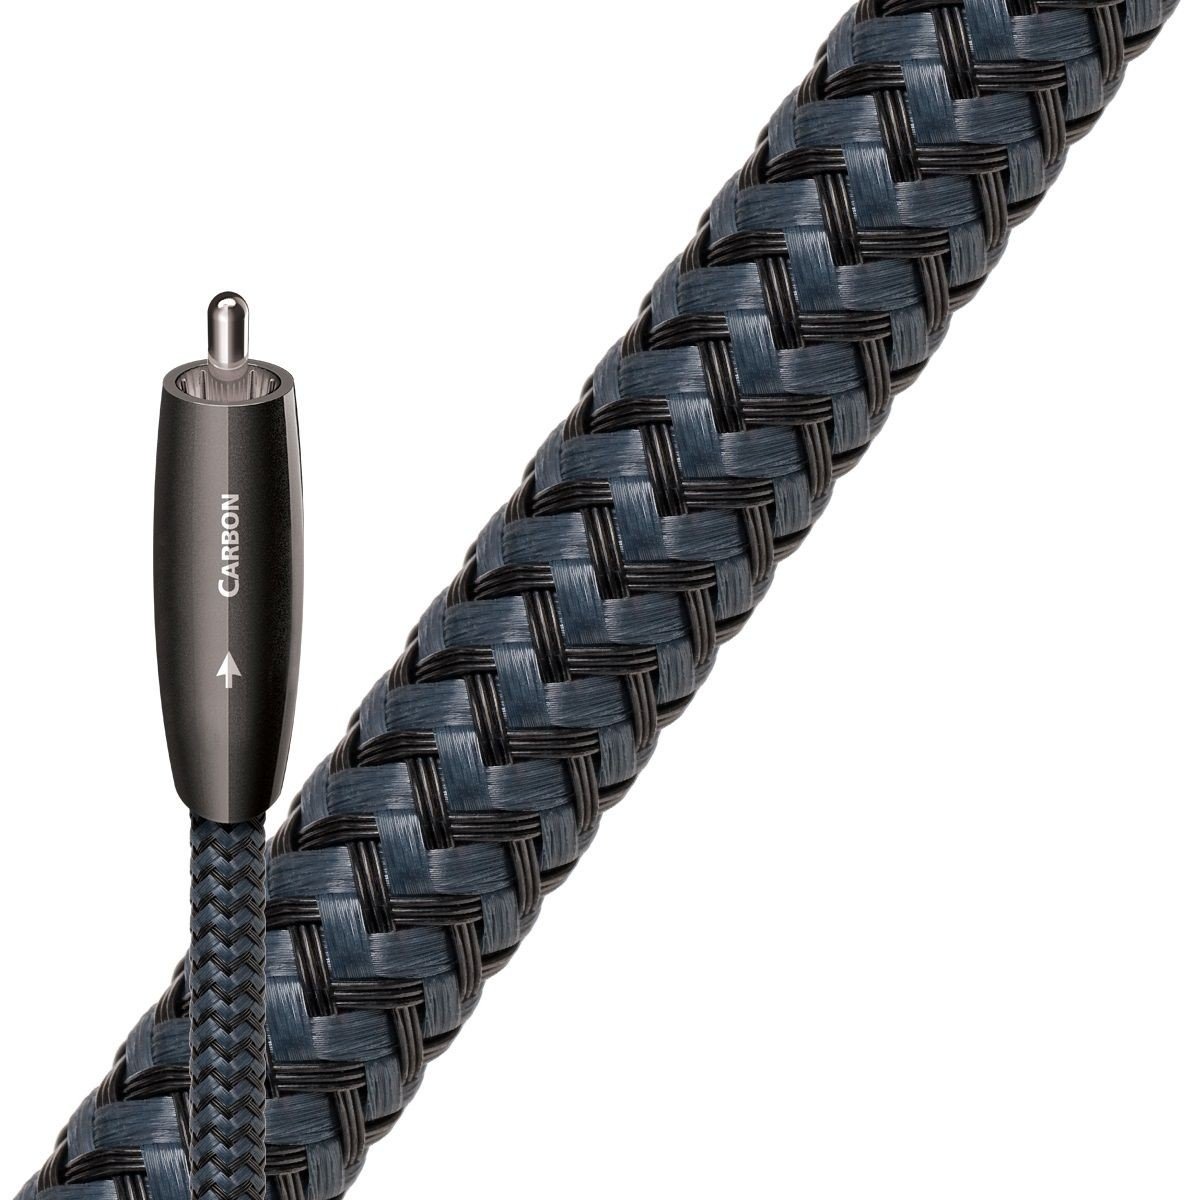 Cabluri coaxiale - Cablu digital coaxial AudioQuest Carbon 3 m, audioclub.ro